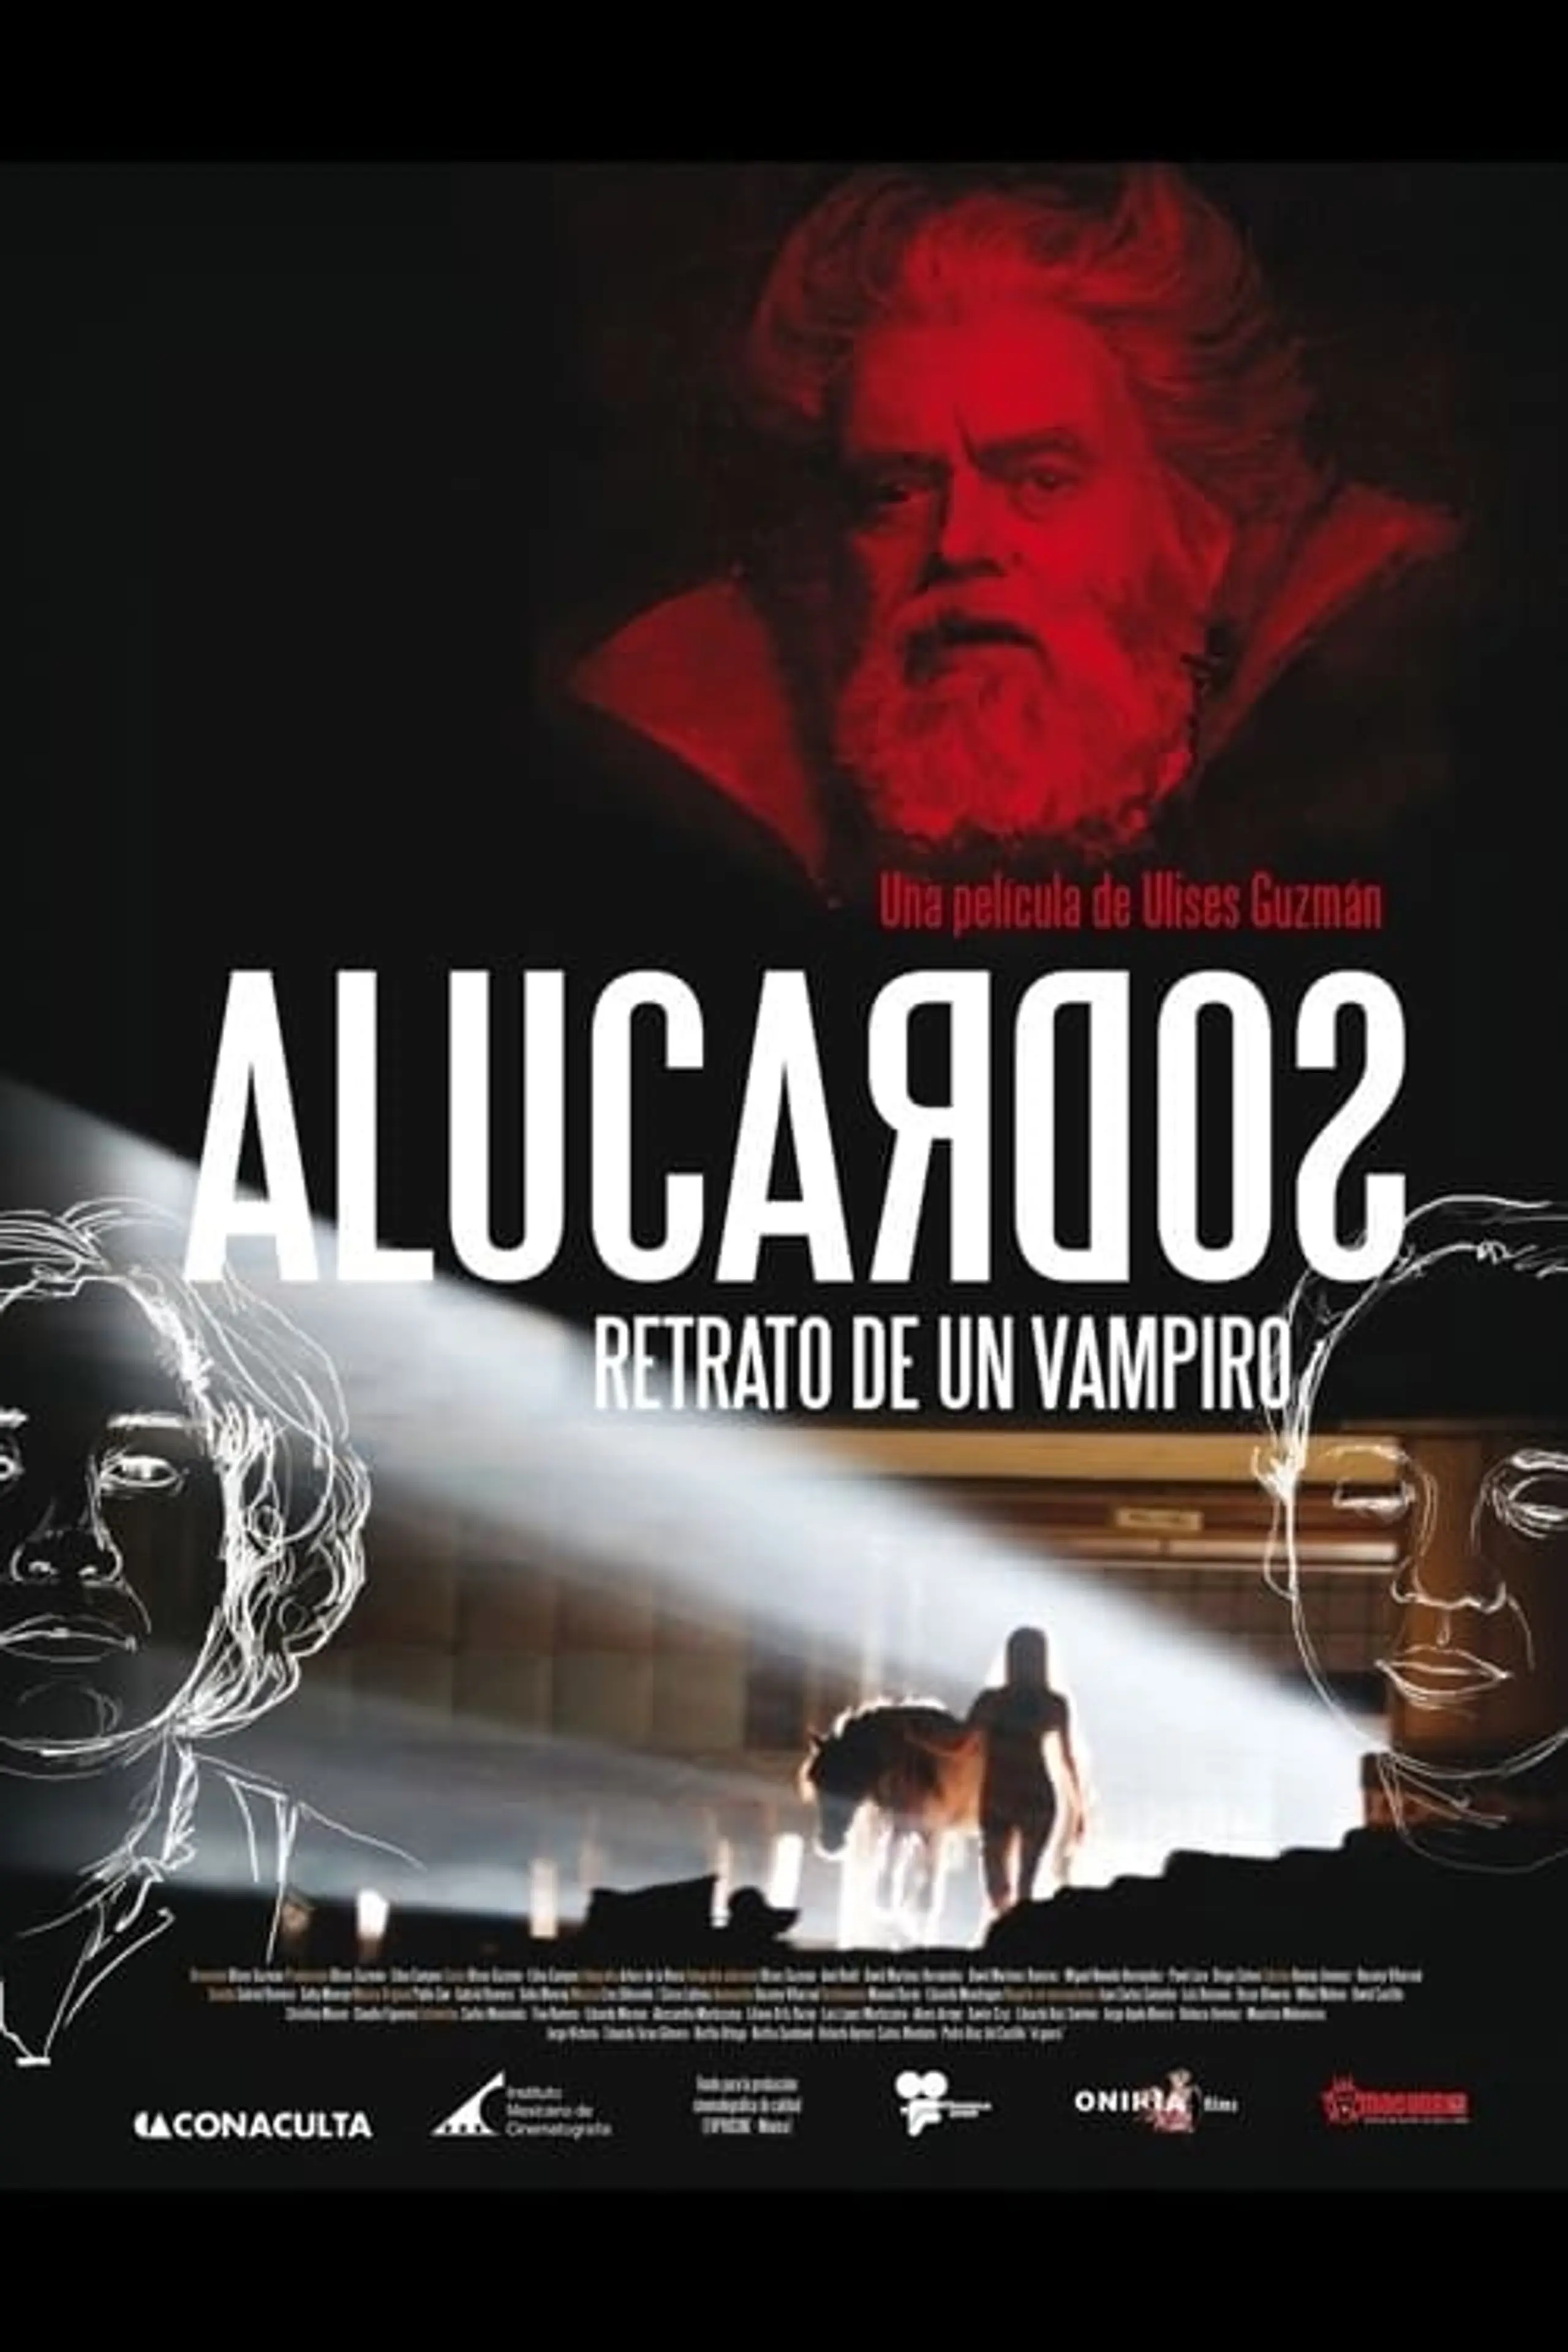 Alucardos: Retrato de un Vampiro